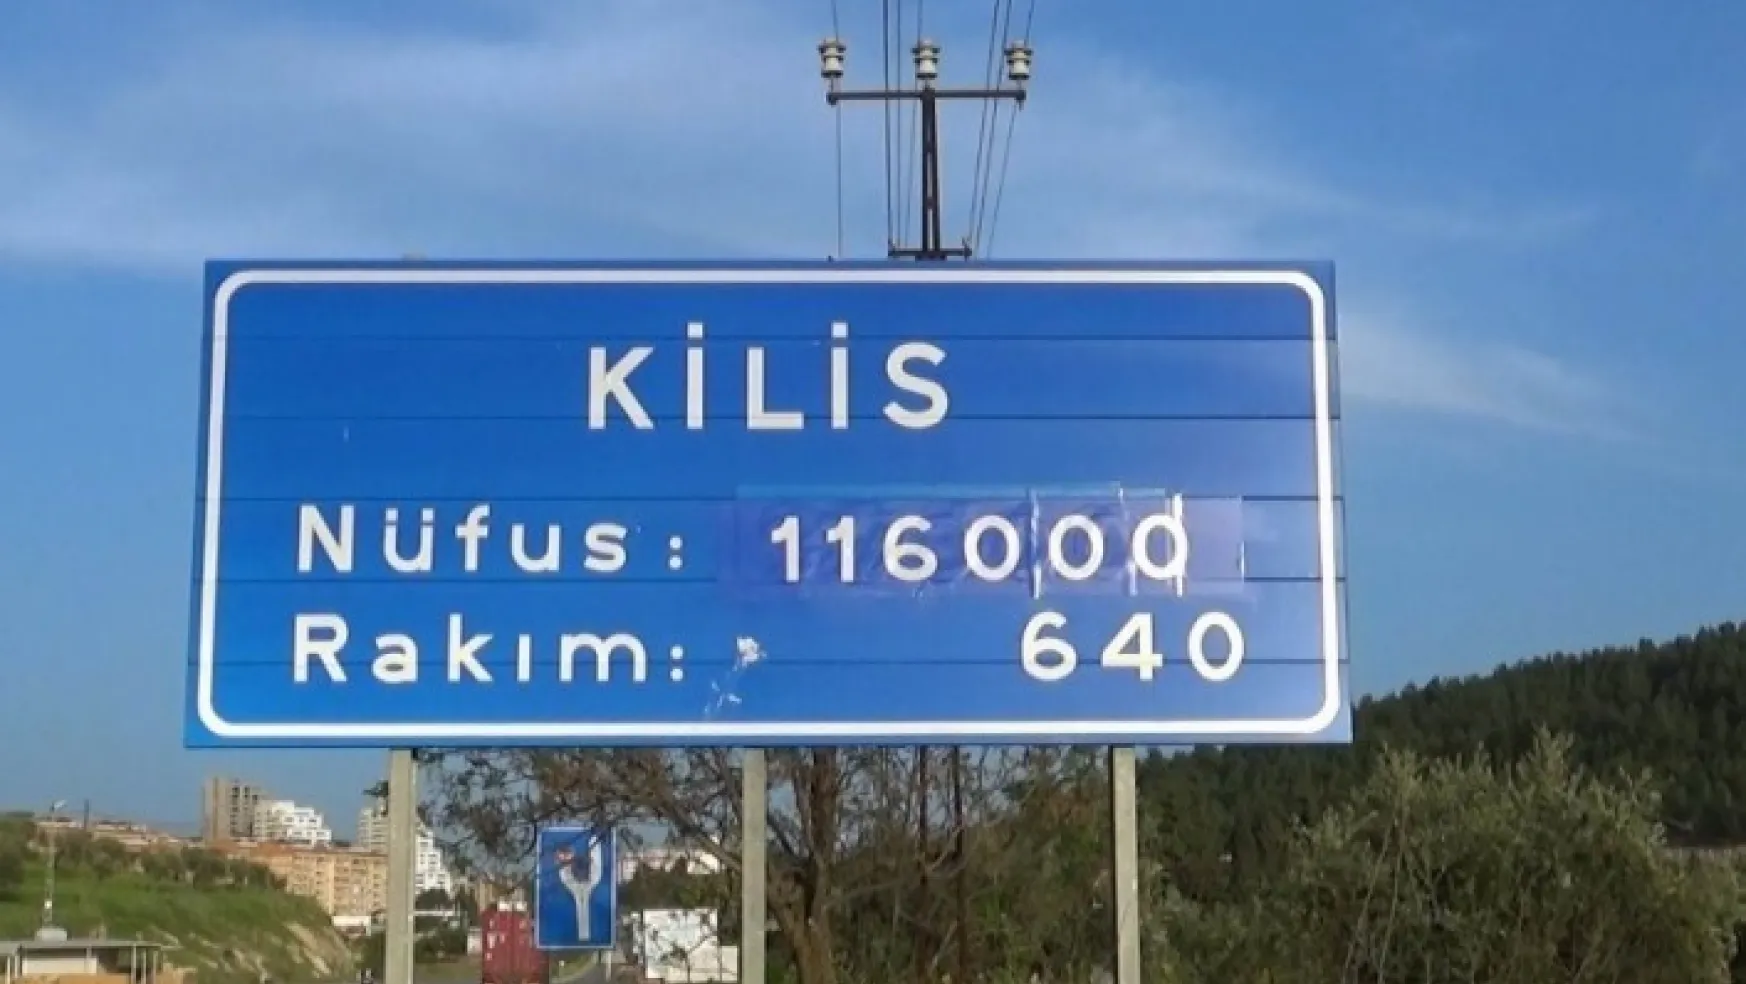 Kilis'te Taziye Ziyaretleri Yasaklandı